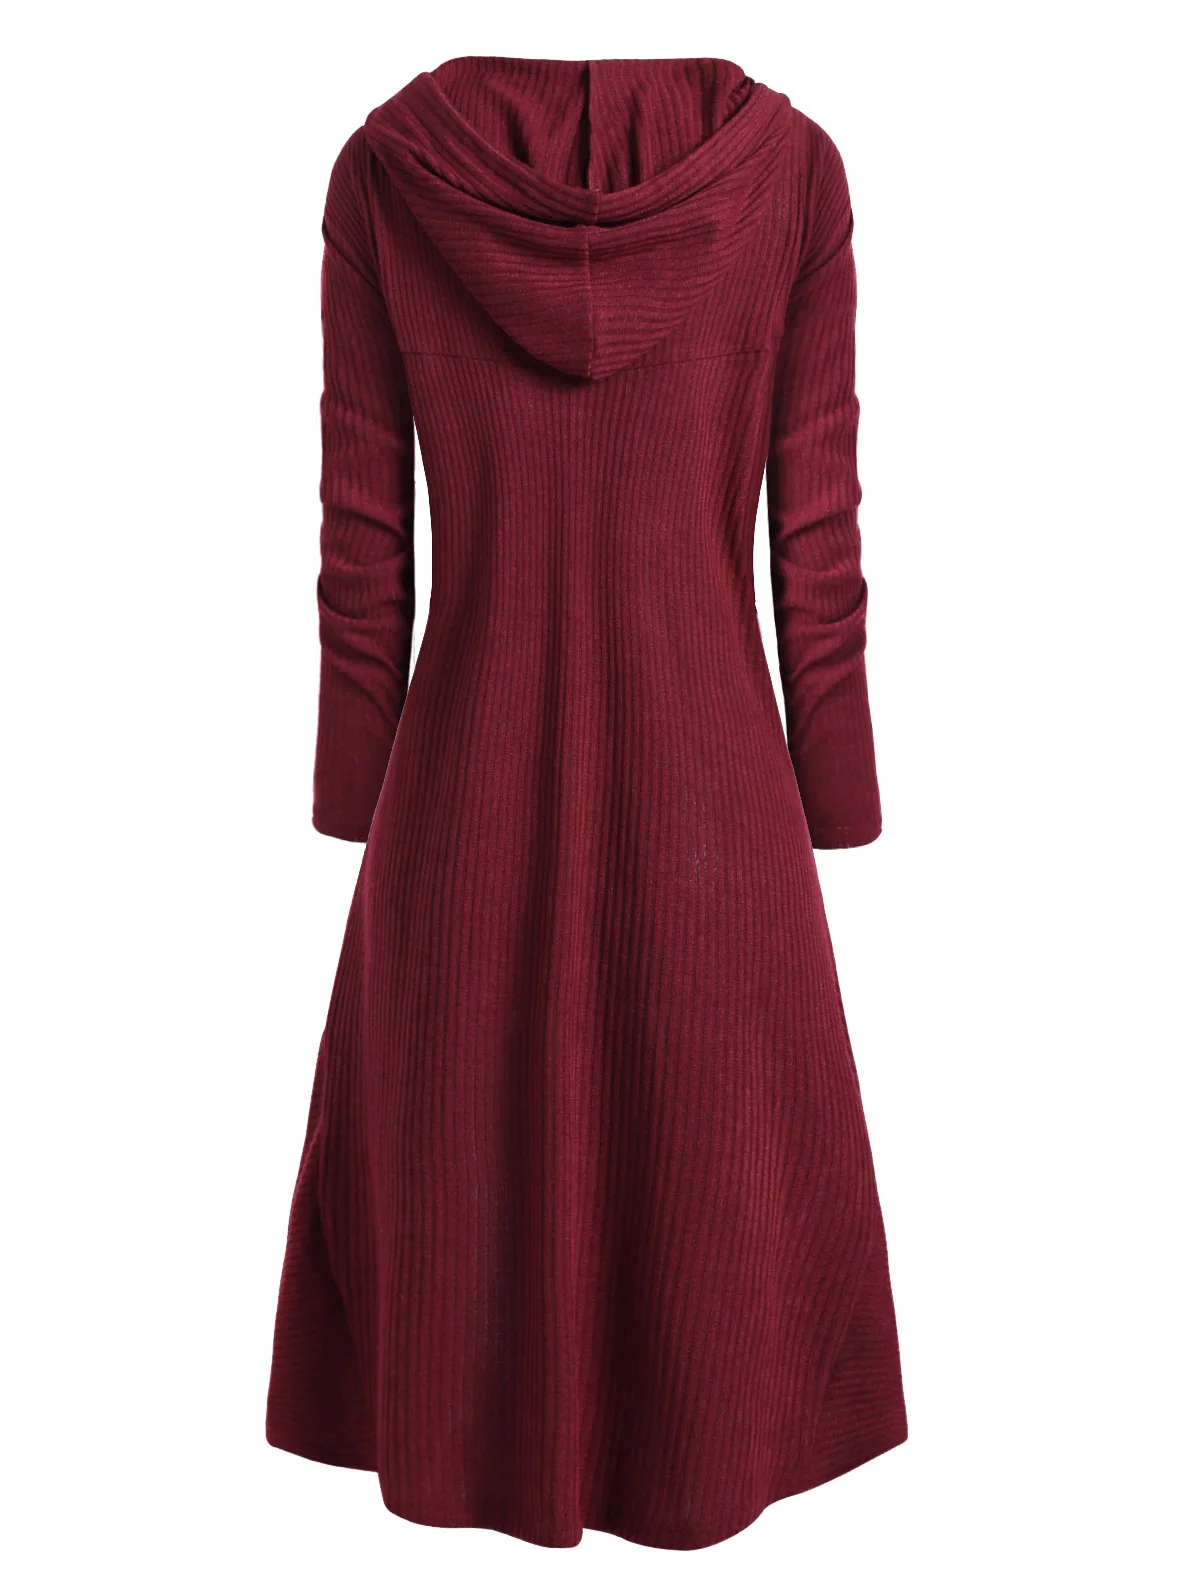 Rosegal Drawstring размера плюс с капюшоном ребристый свитер Женский Повседневный длинный рукав высокий низкий женский свитер-пуловер Джемперы Pull Femme